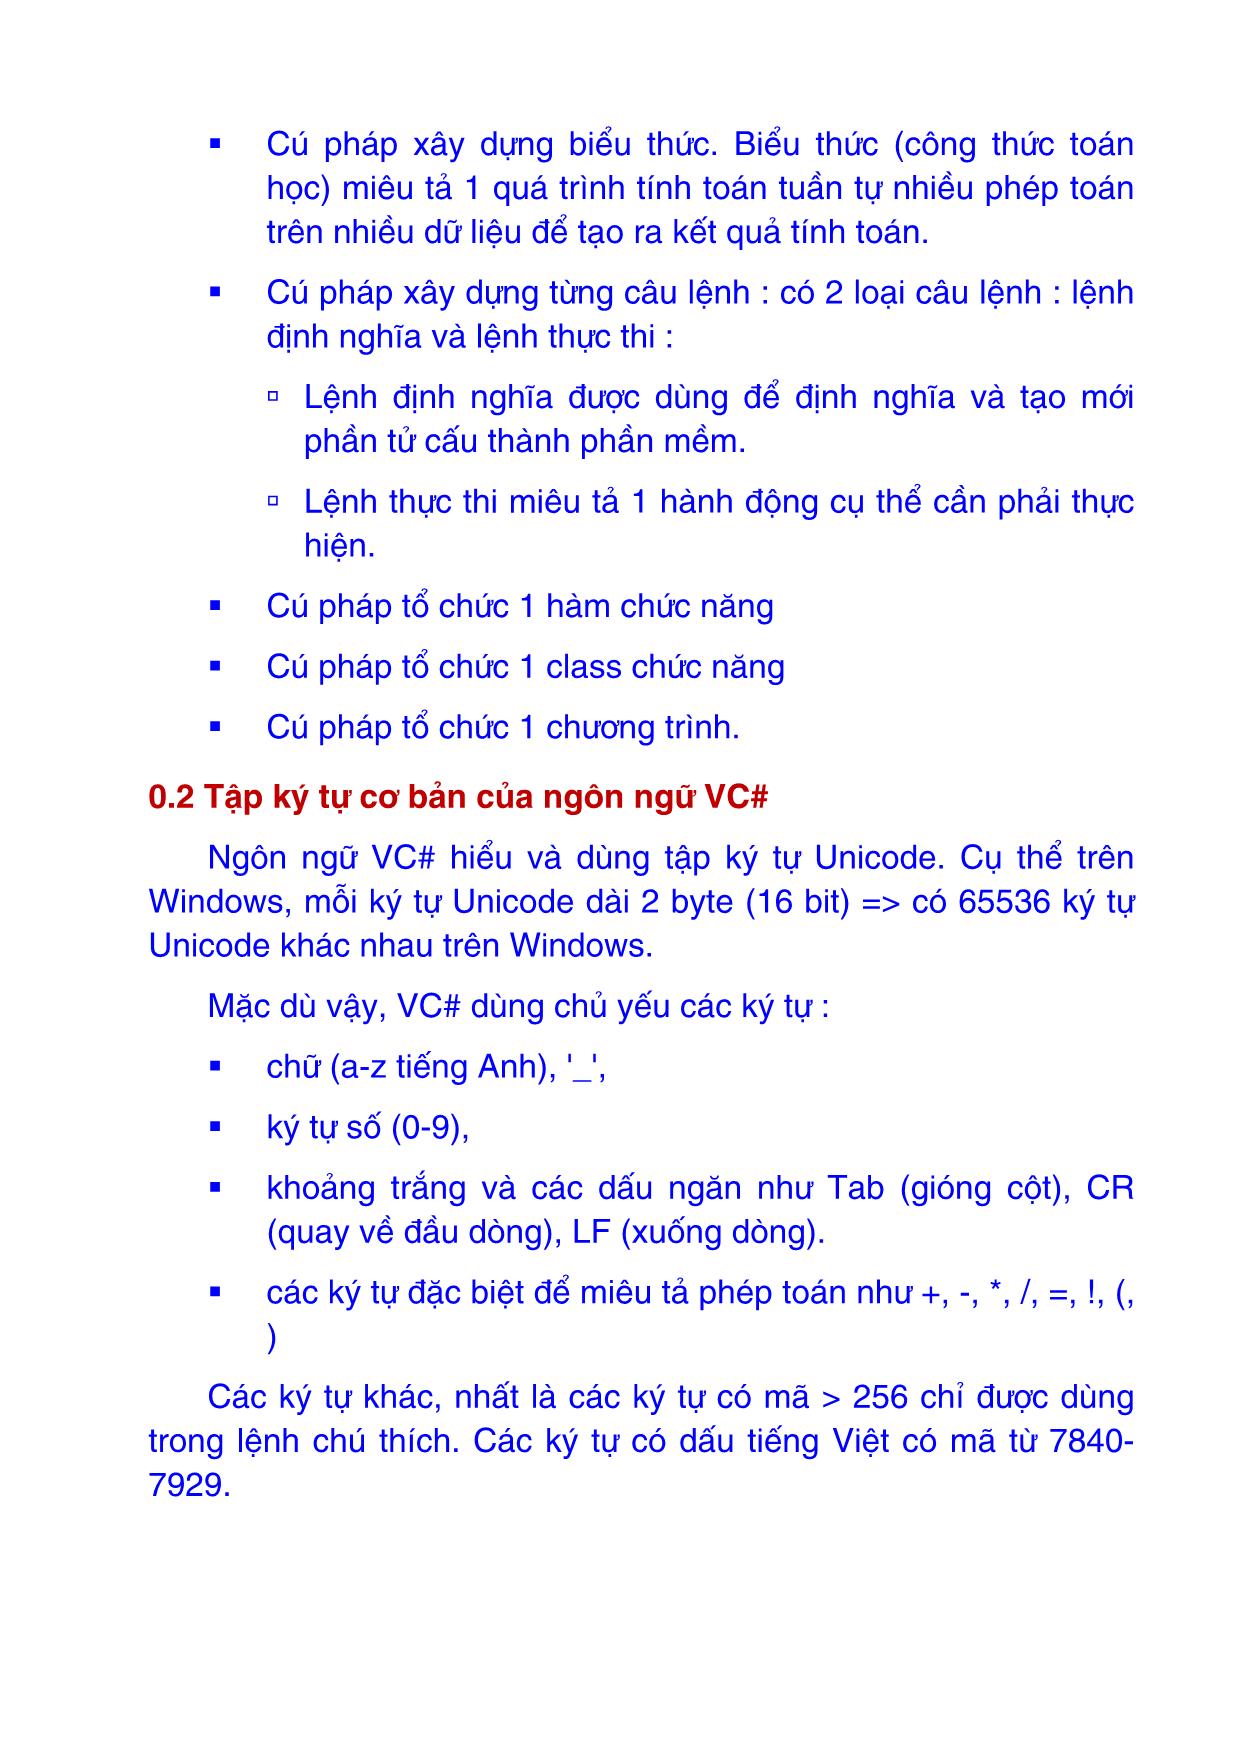 Giáo trình Ngôn ngữ VC# trang 2